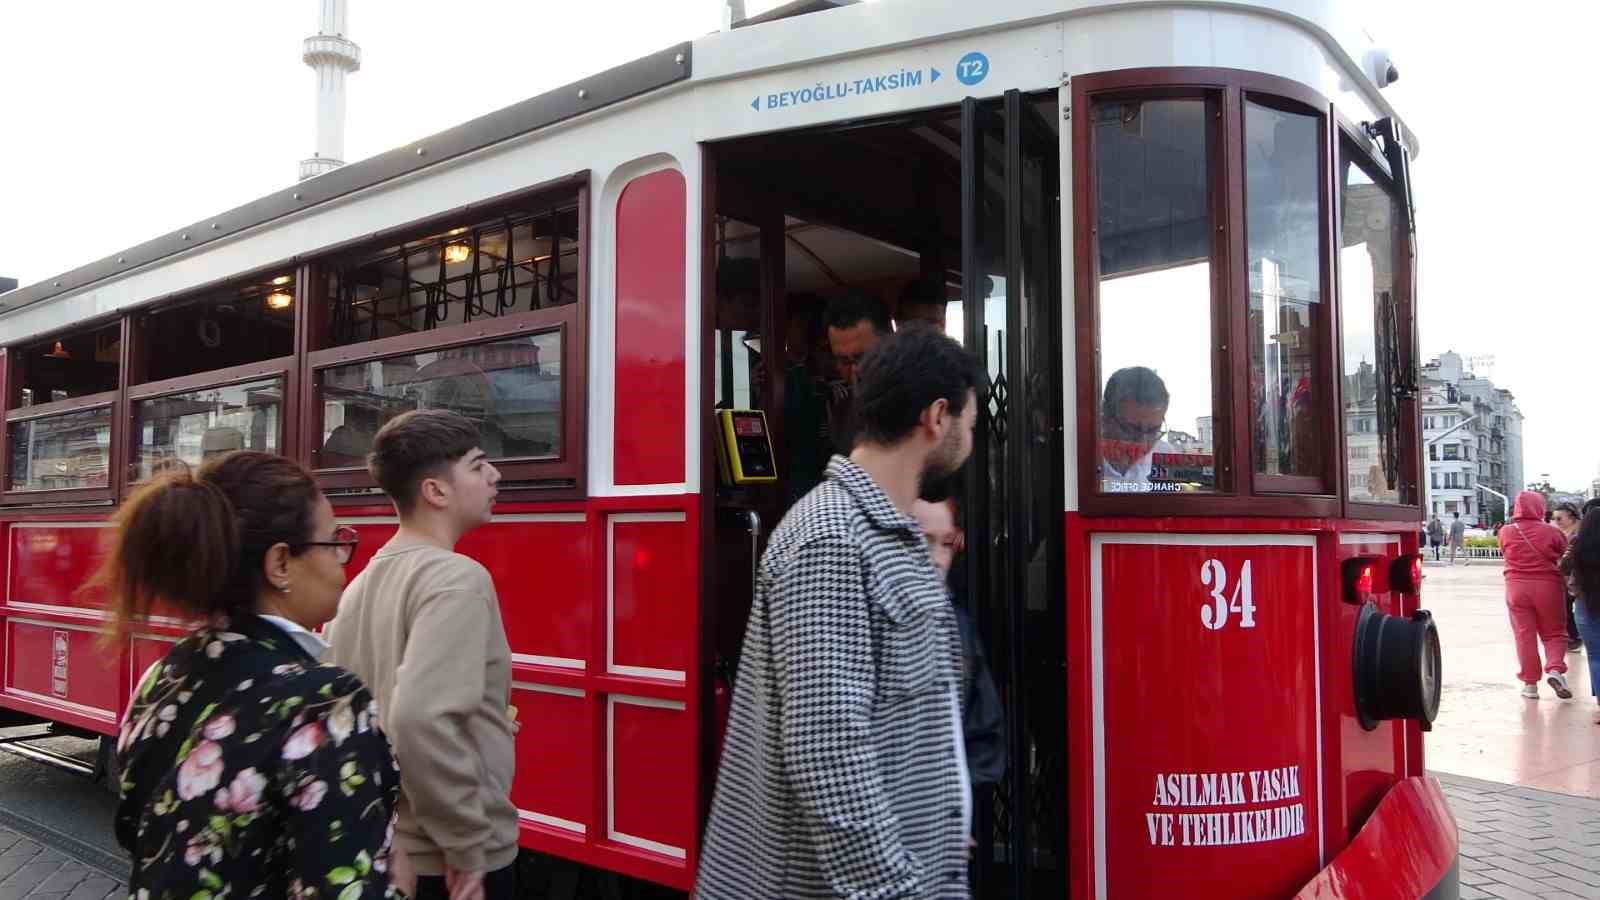 taksimde test surusune cikan akulu nostaljik tramvaya vatandaslar yogun ilgi gosterdi 2 3IOT1zLc